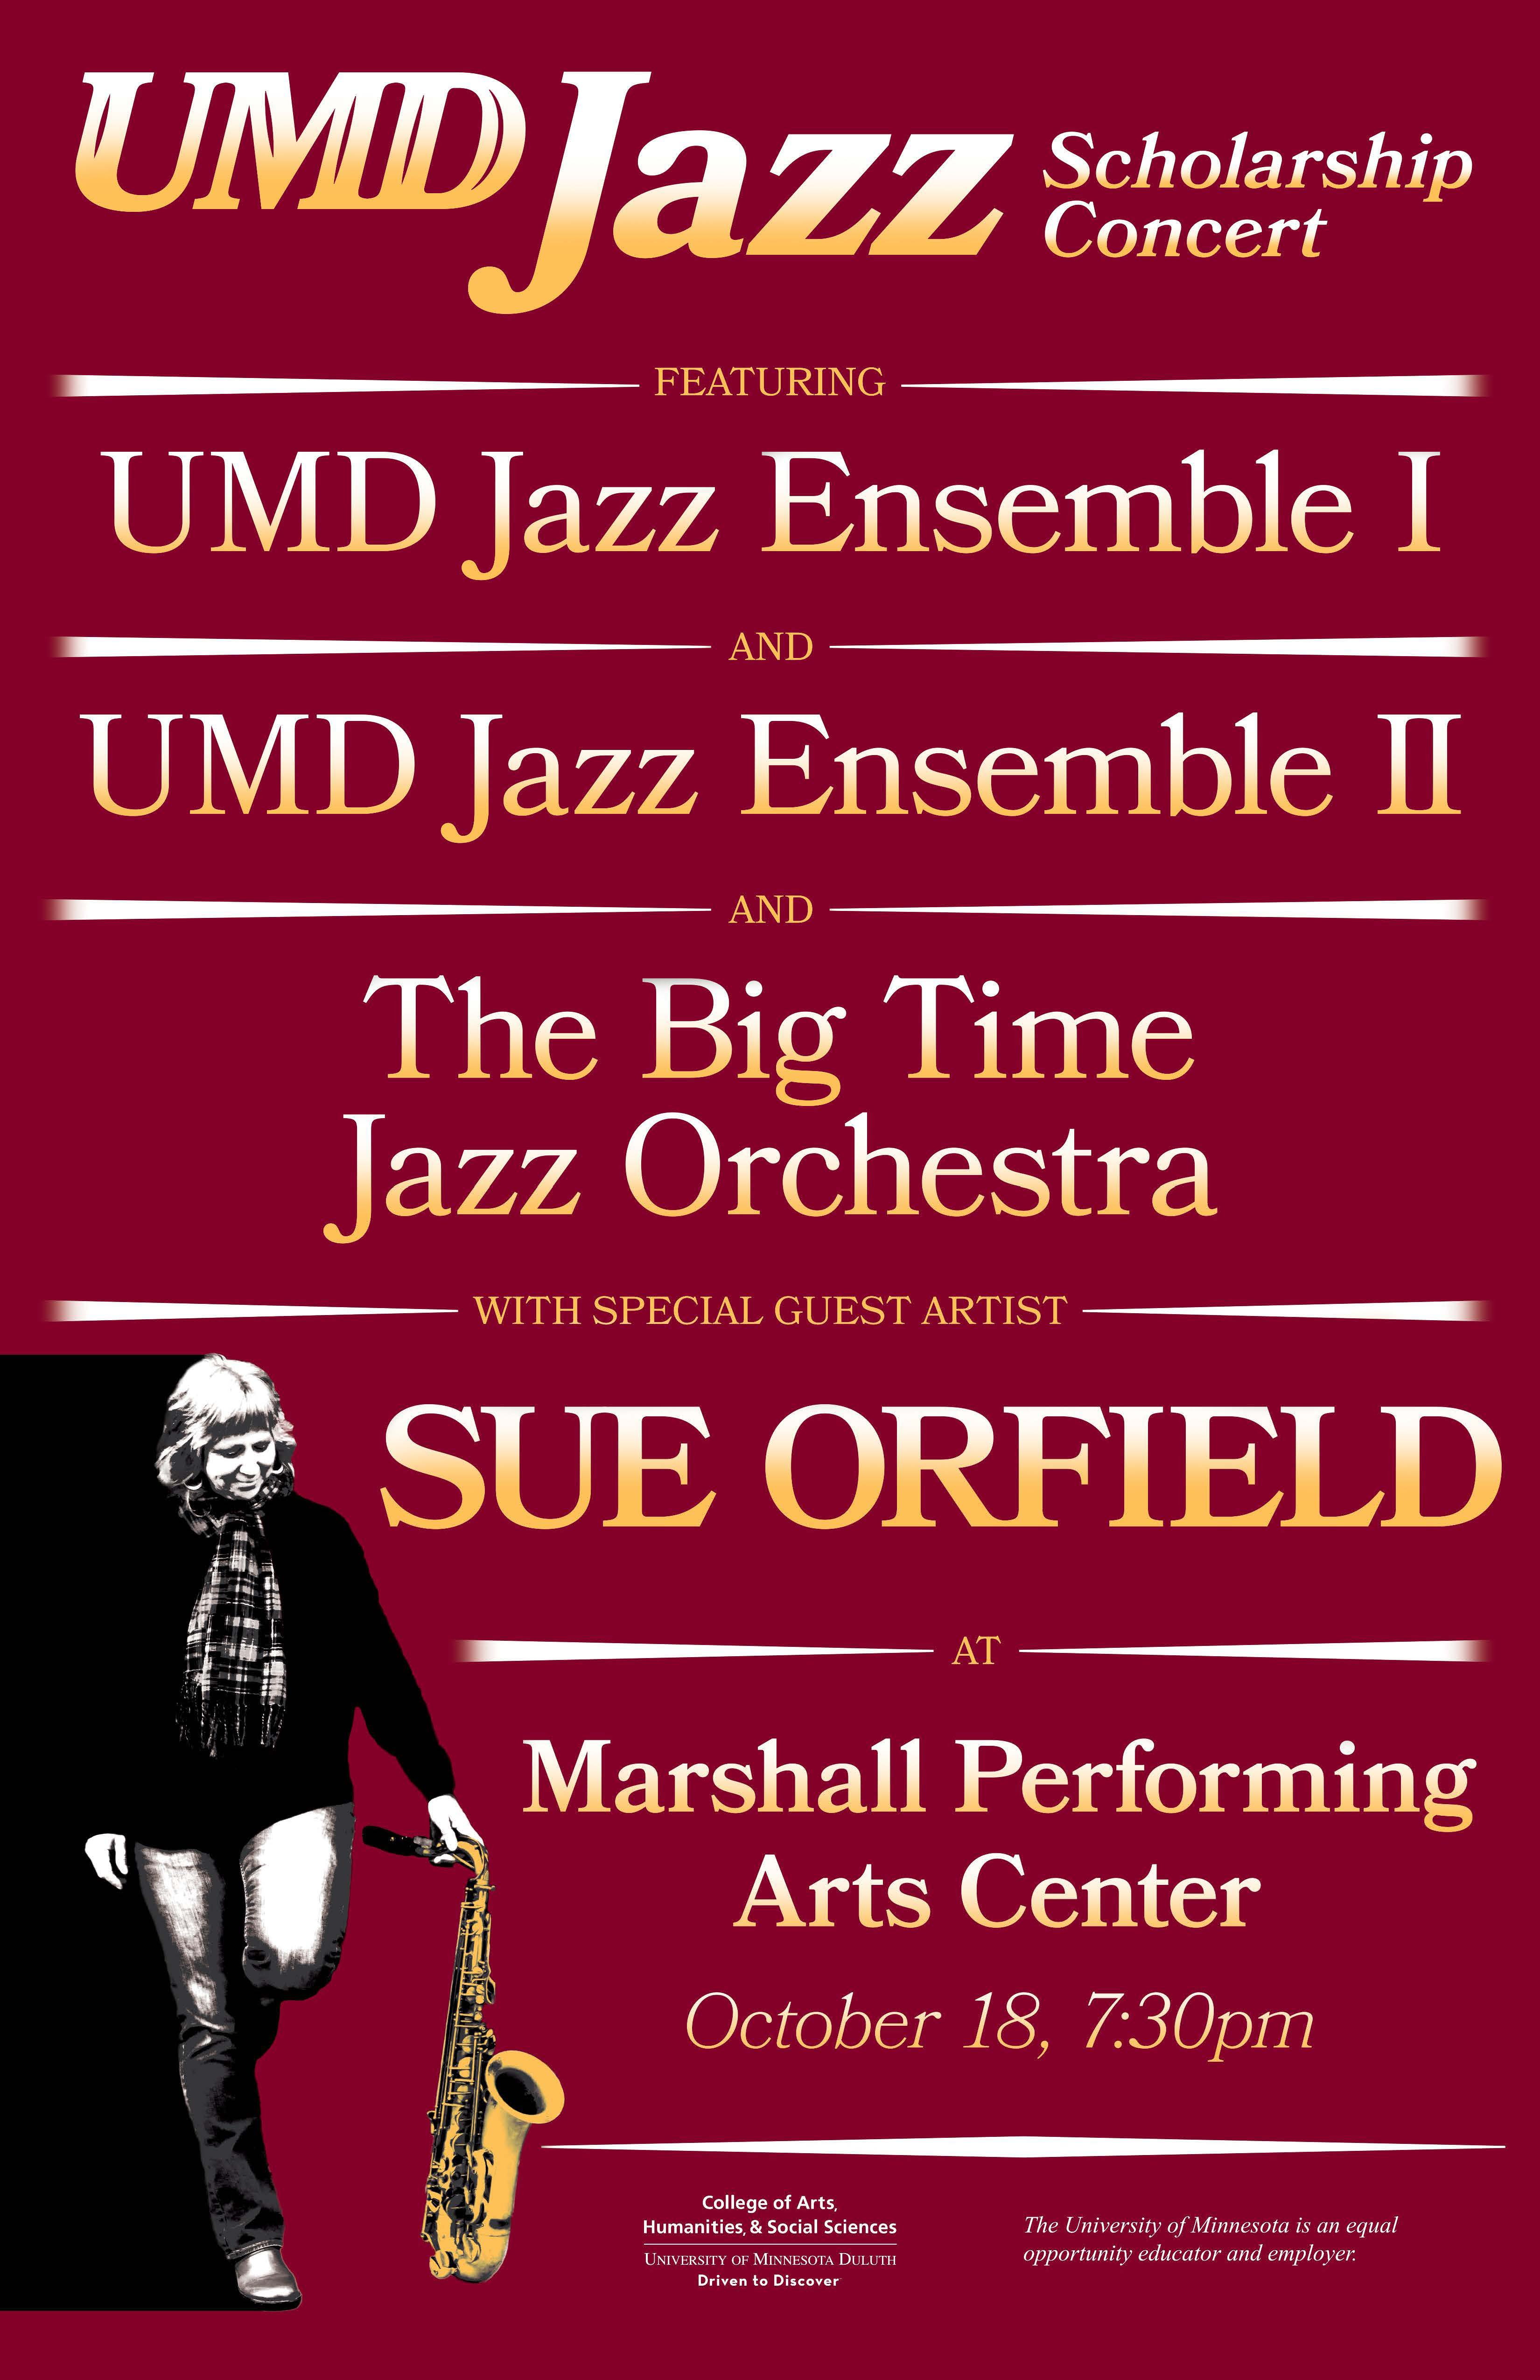 UMD Jazz Scholarship Concert